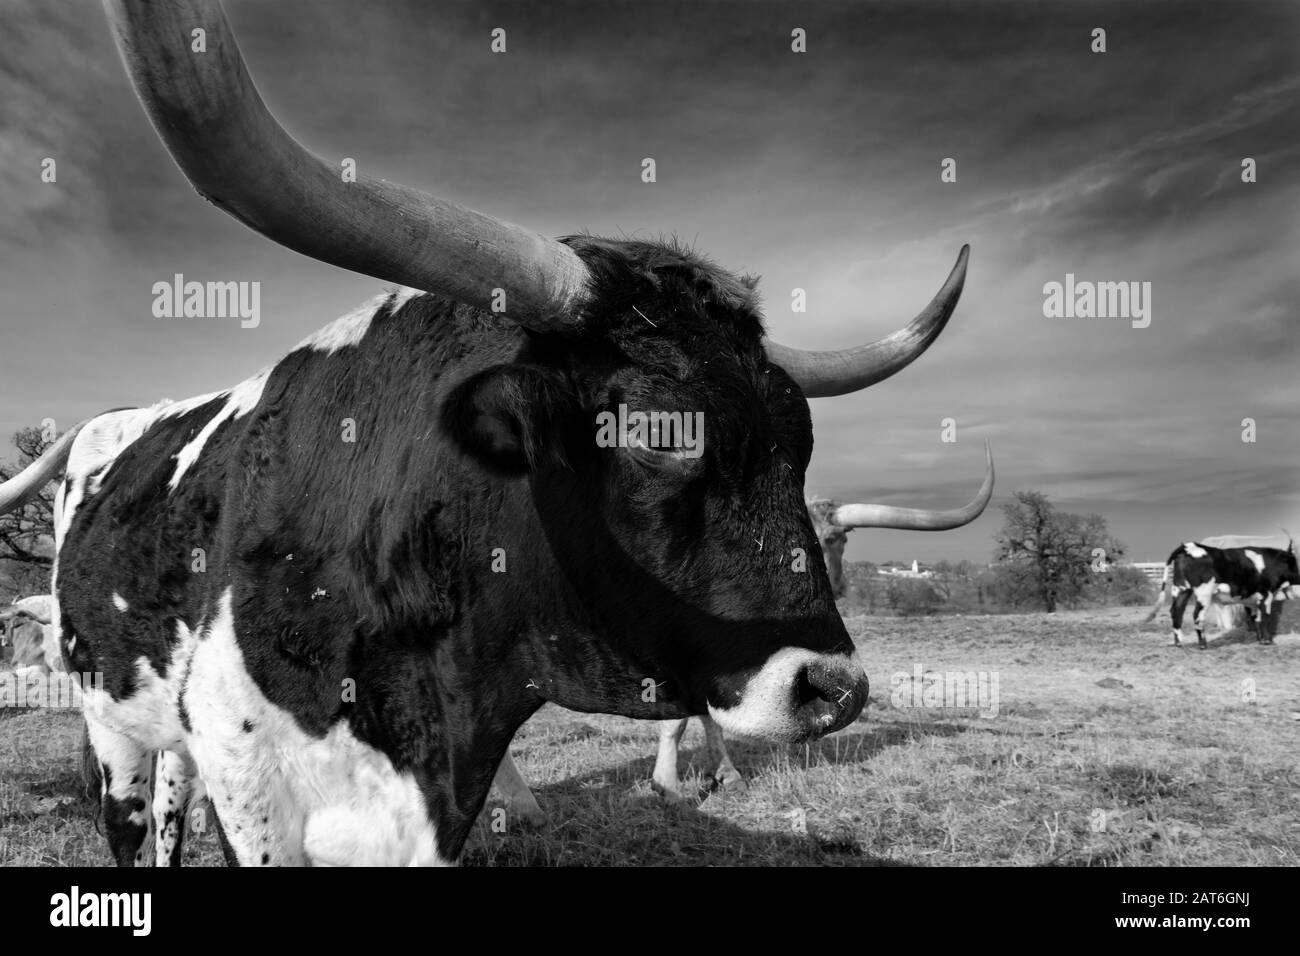 Closeup monochrome et profil de la tête, du visage, et des cornes d'un grand taureau, noir et blanc, Longhorn debout dans un pâturage avec d'autres bovins dans son Banque D'Images